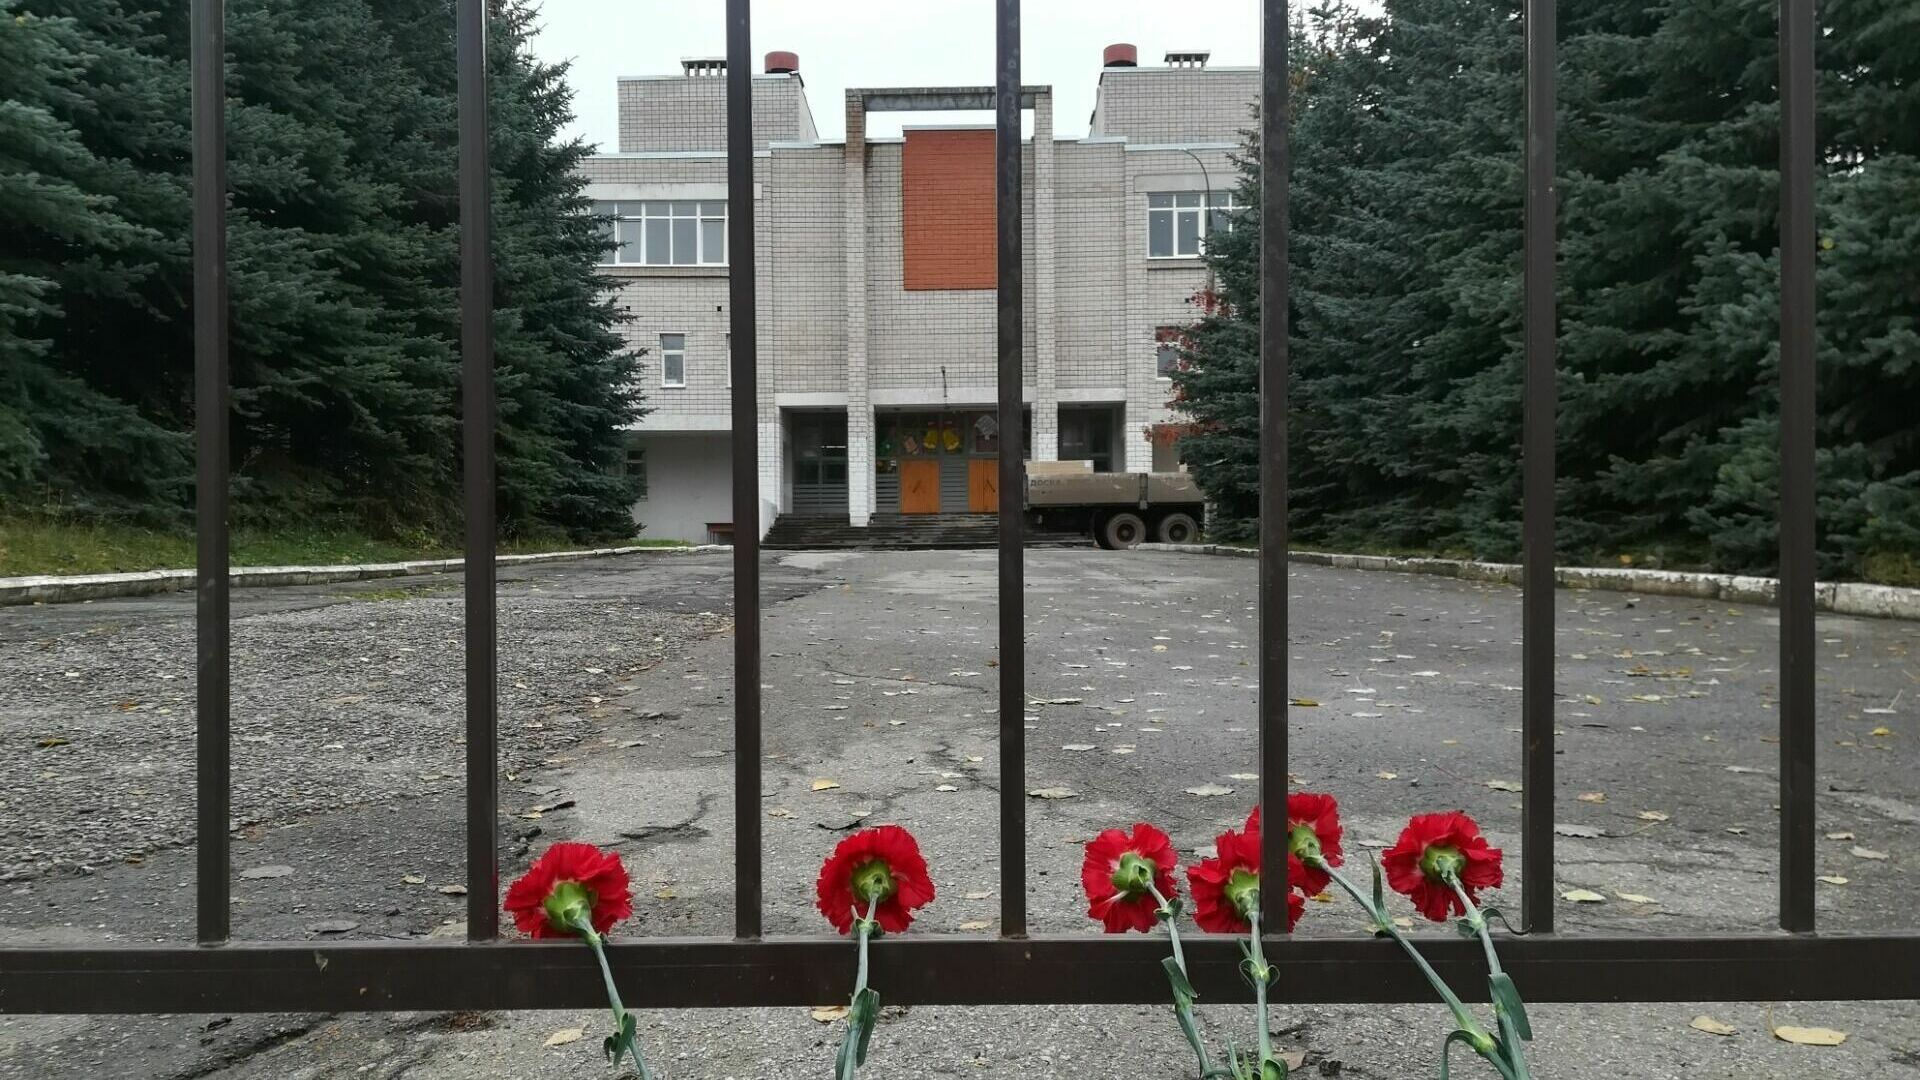 Число погибших в 88 школе выросло до 18, гуманитарка в Вольск и 3D-блины от студентов